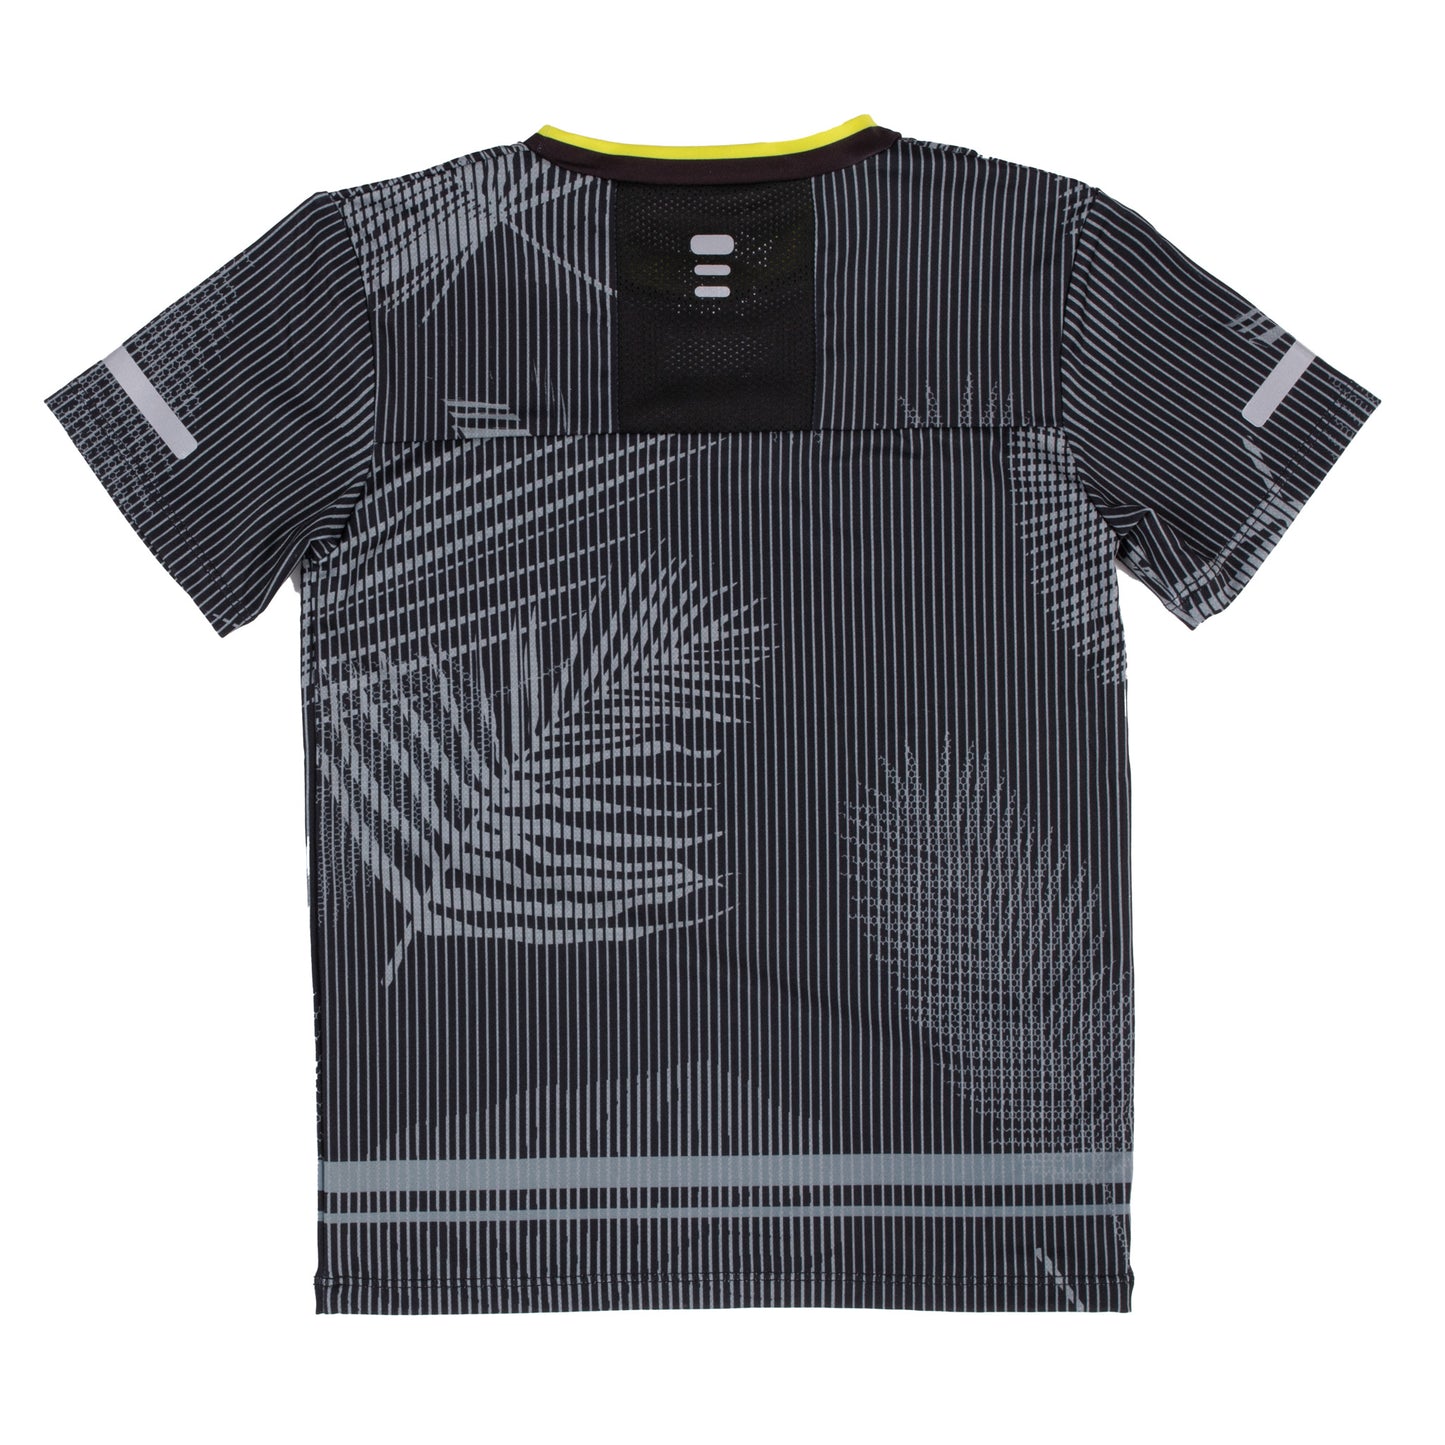 T-Shirt athlétique - Imprimé Noir - S22A81-03 - 4 à 14 ans